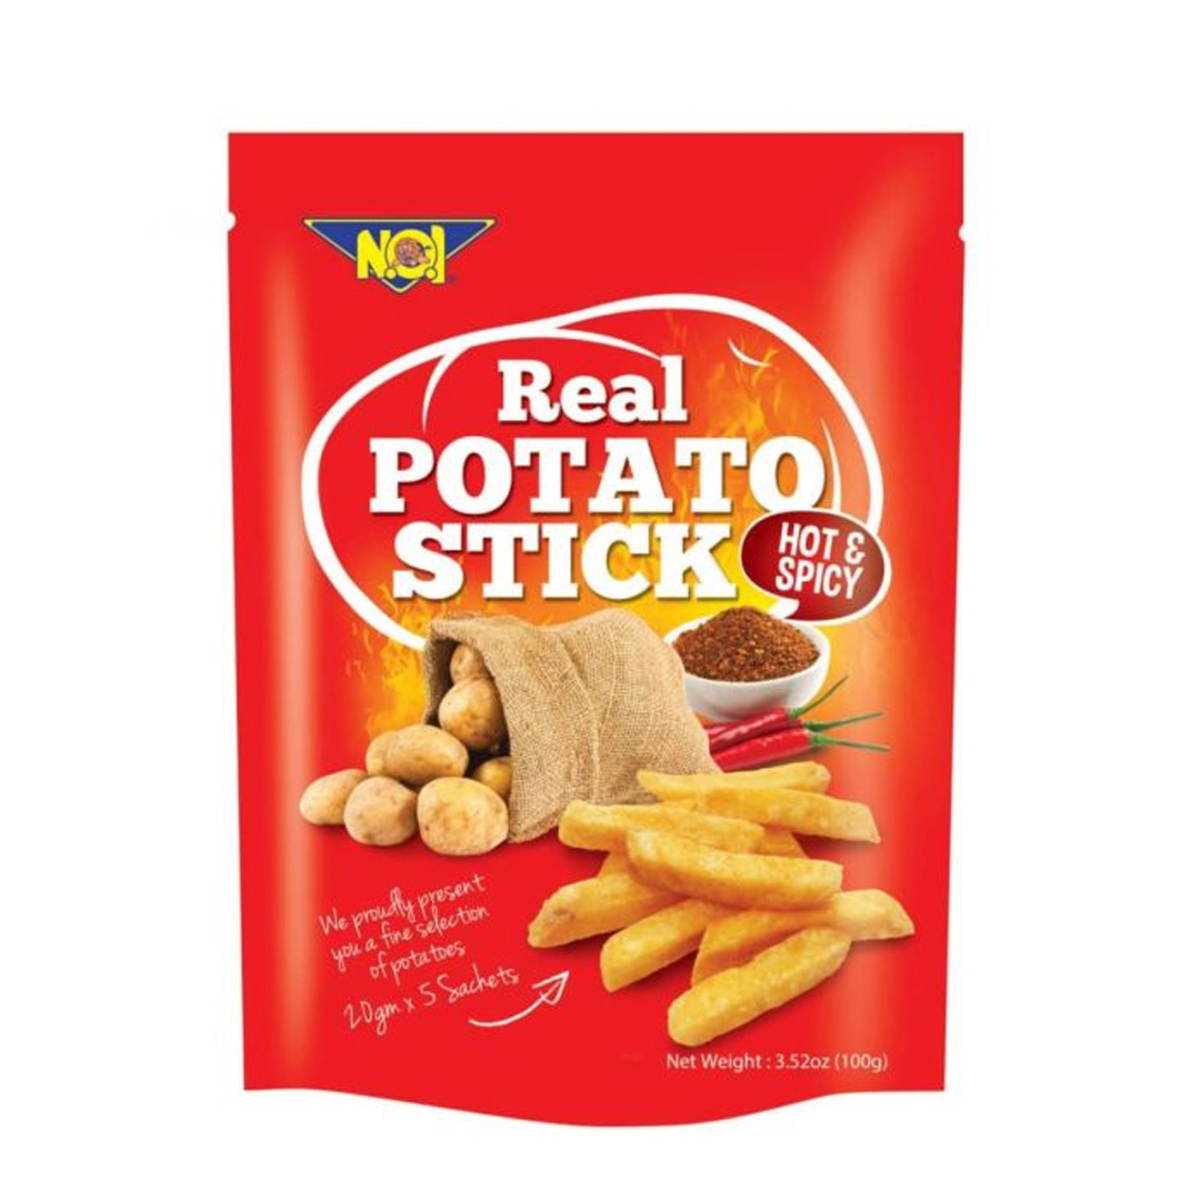 Noi Real Potato Stick Hot & Spicy 100g